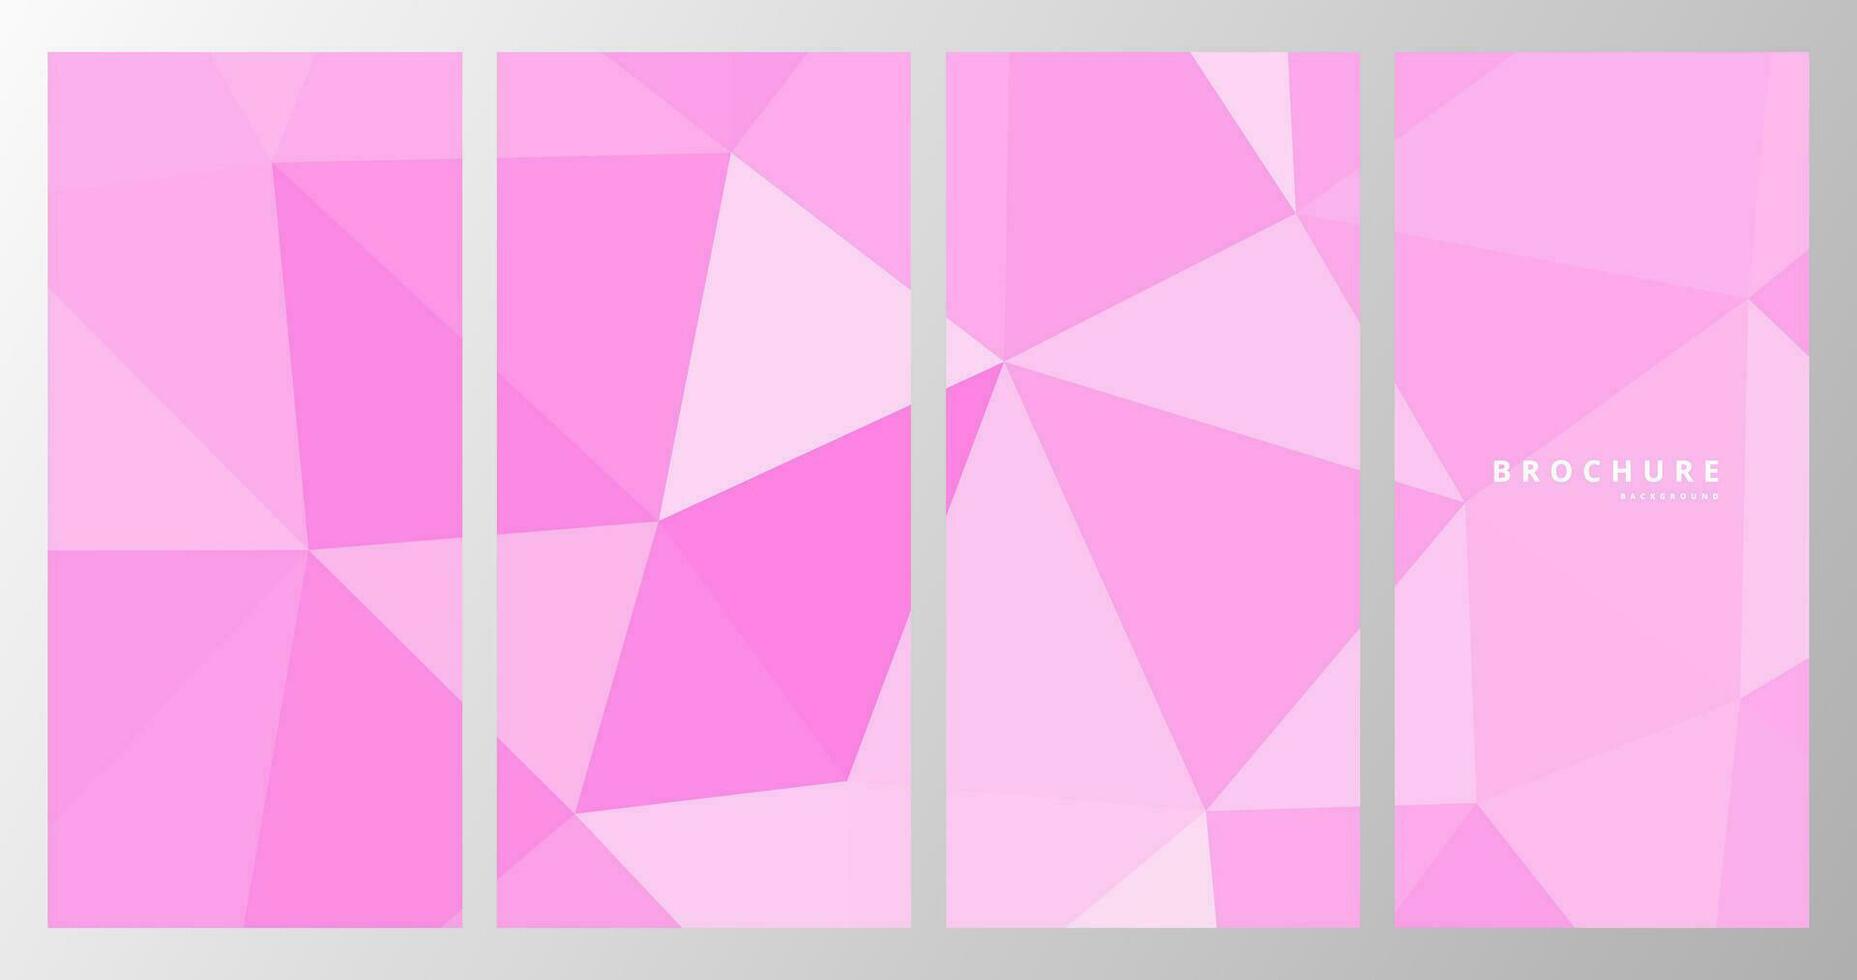 uppsättning av broschyrer med abstrakt rosa bakgrund vektor